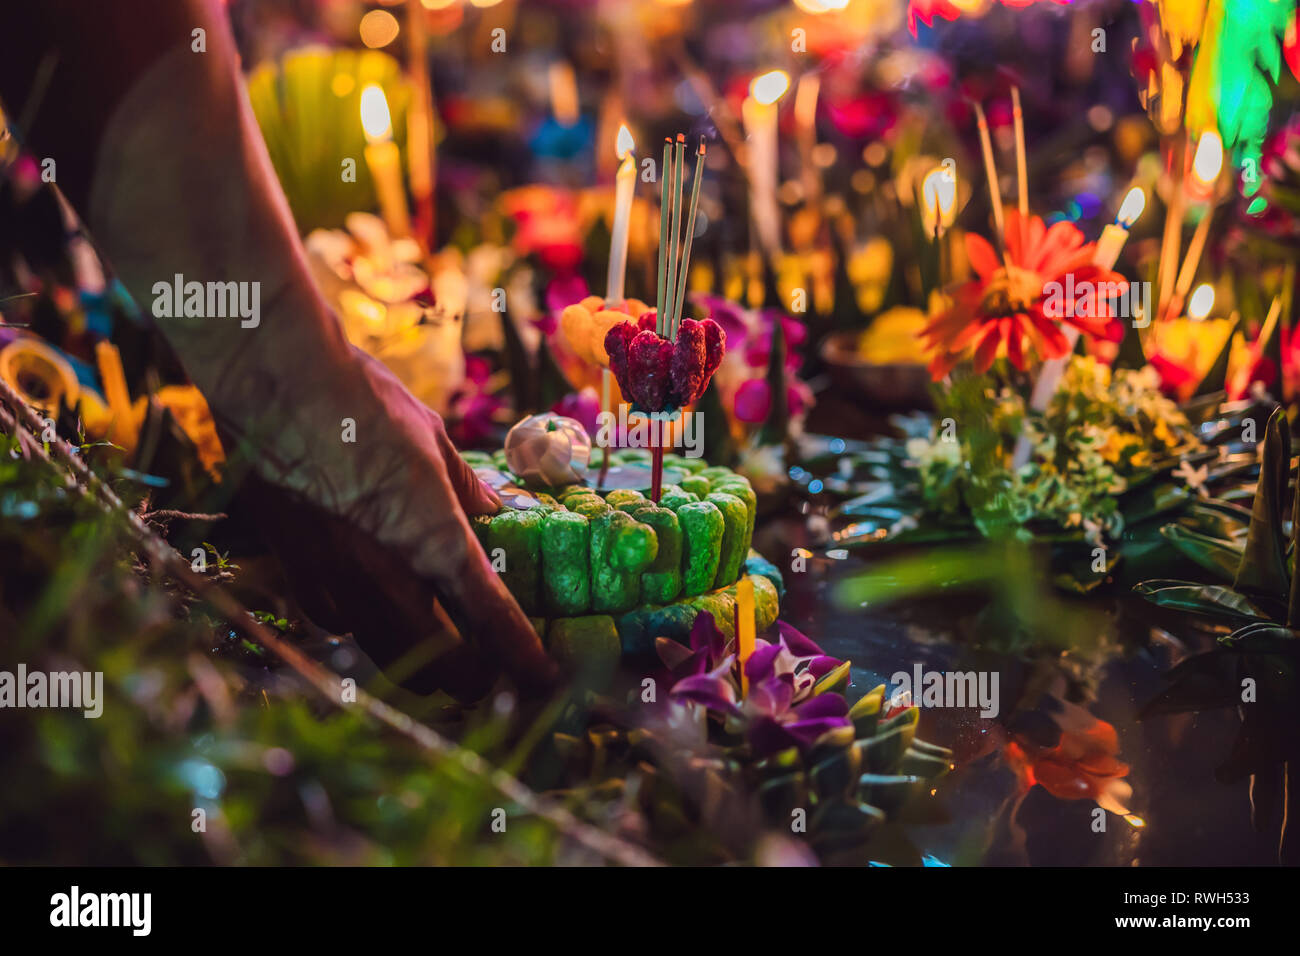 Loy Krathong festival, les gens acheter des fleurs et des bougies à la lumière et flottent sur l'eau pour célébrer le festival de Loy Krathong en Thaïlande Banque D'Images